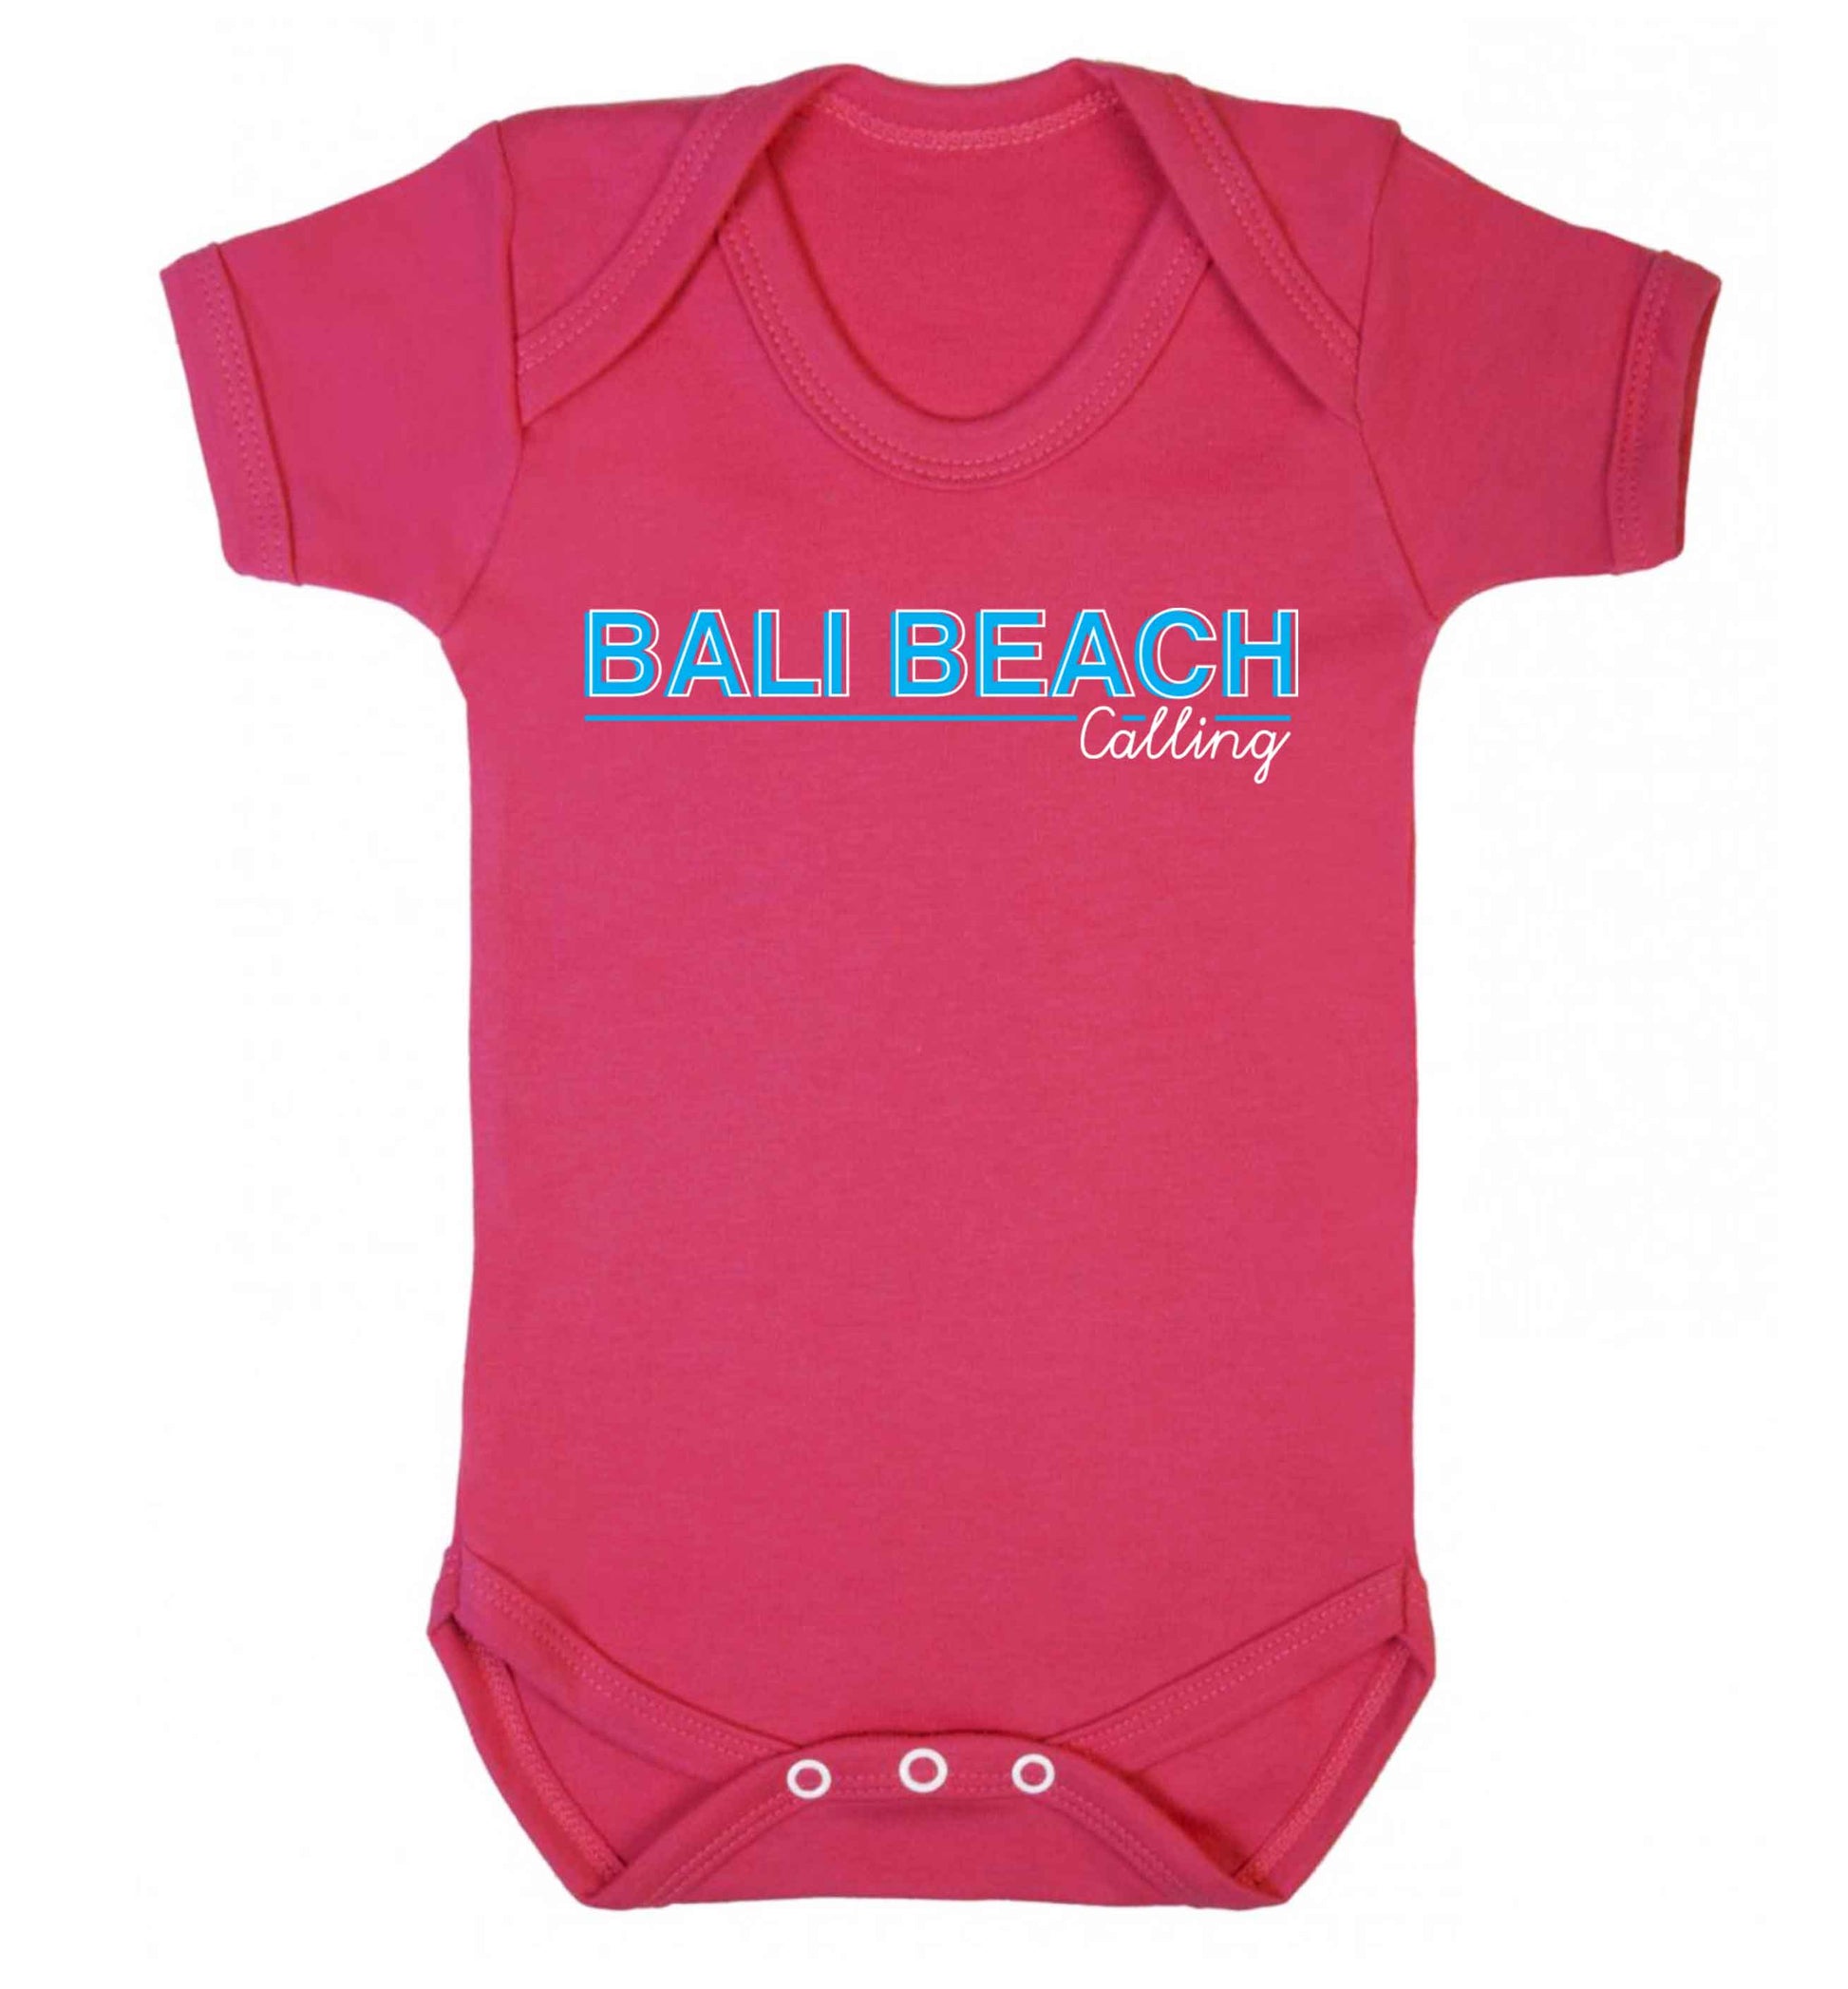 Bali beach calling Baby Vest dark pink 18-24 months